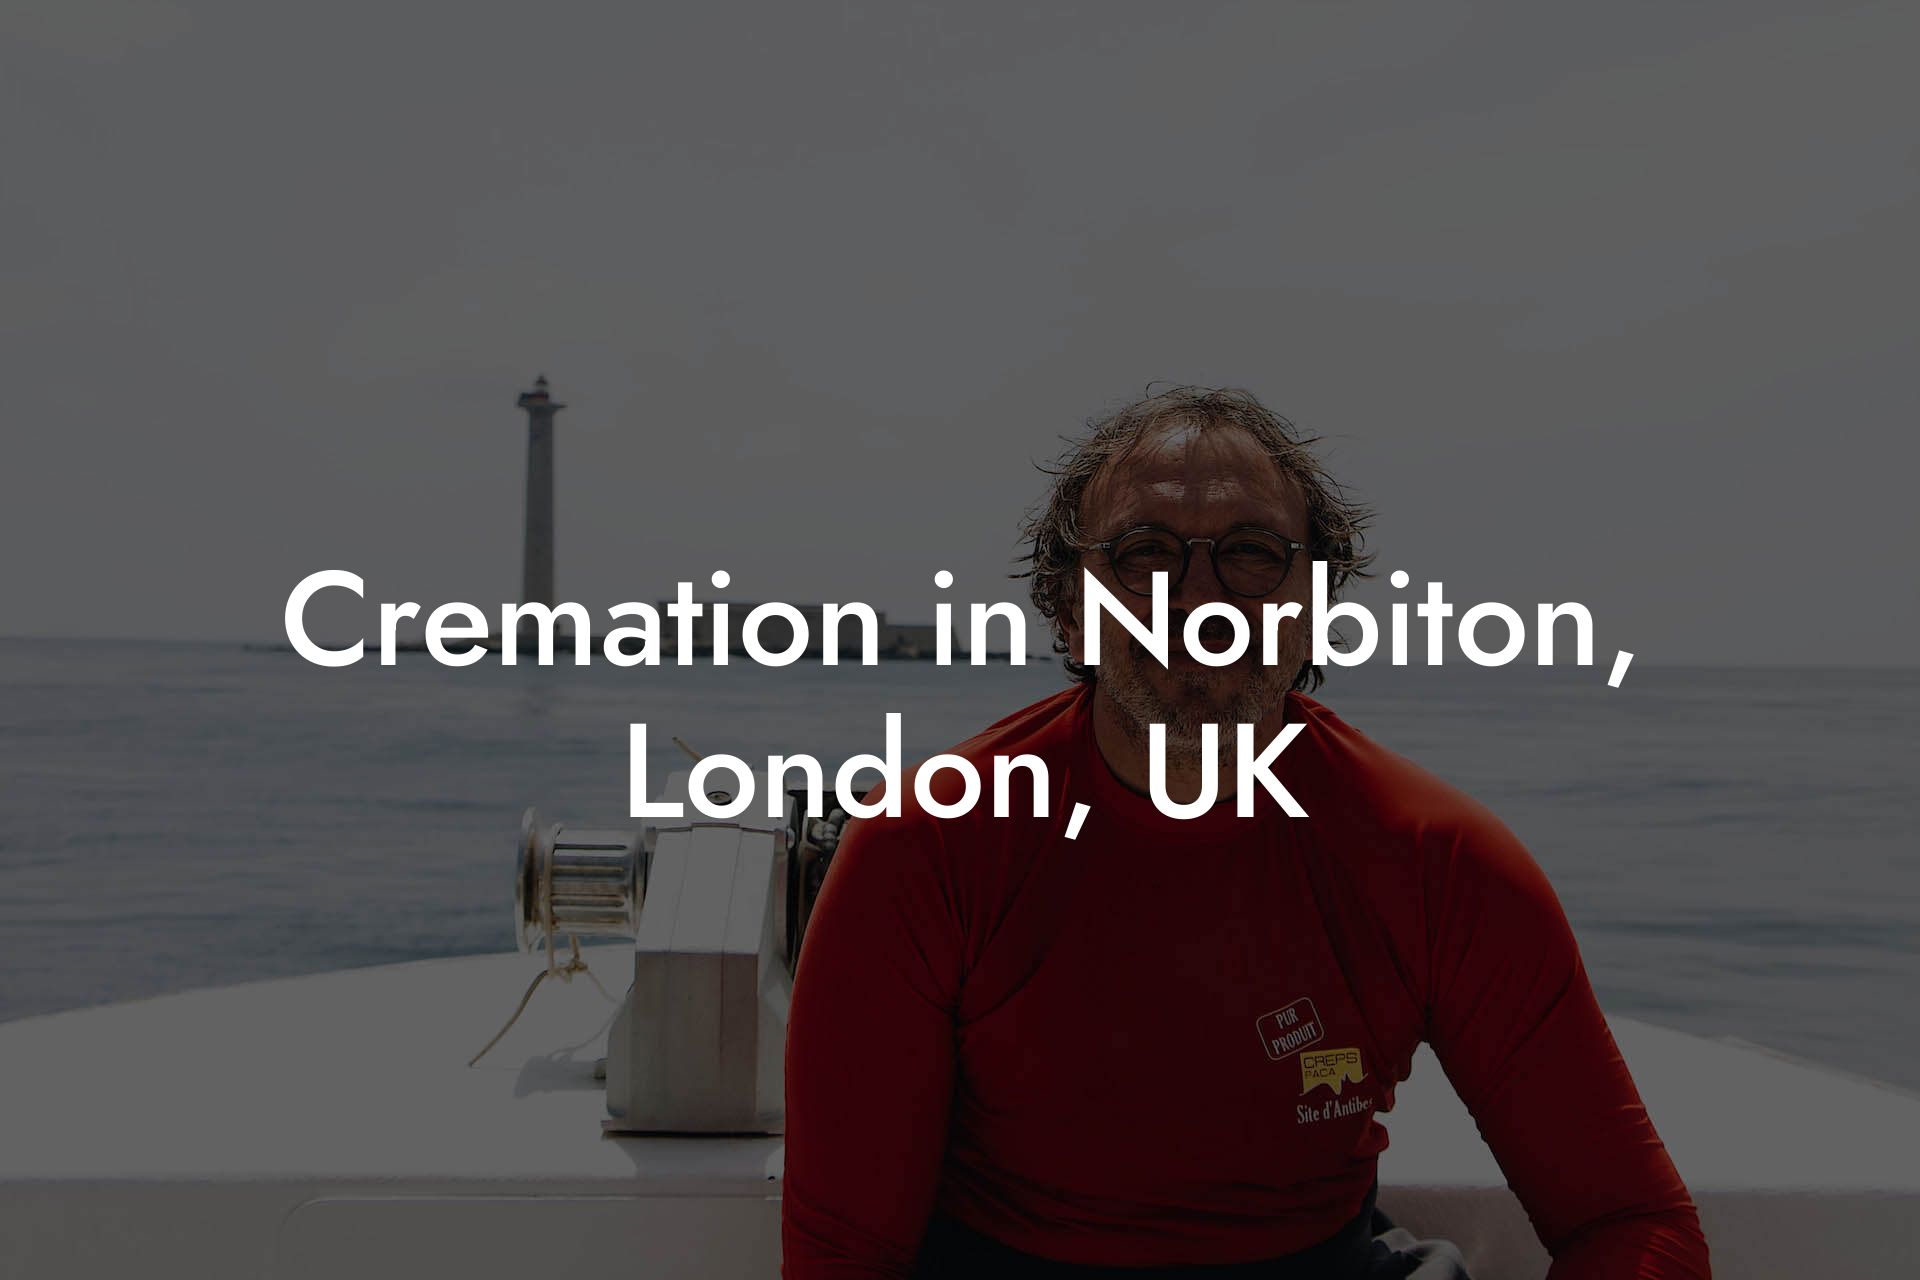 Cremation in Norbiton, London, UK